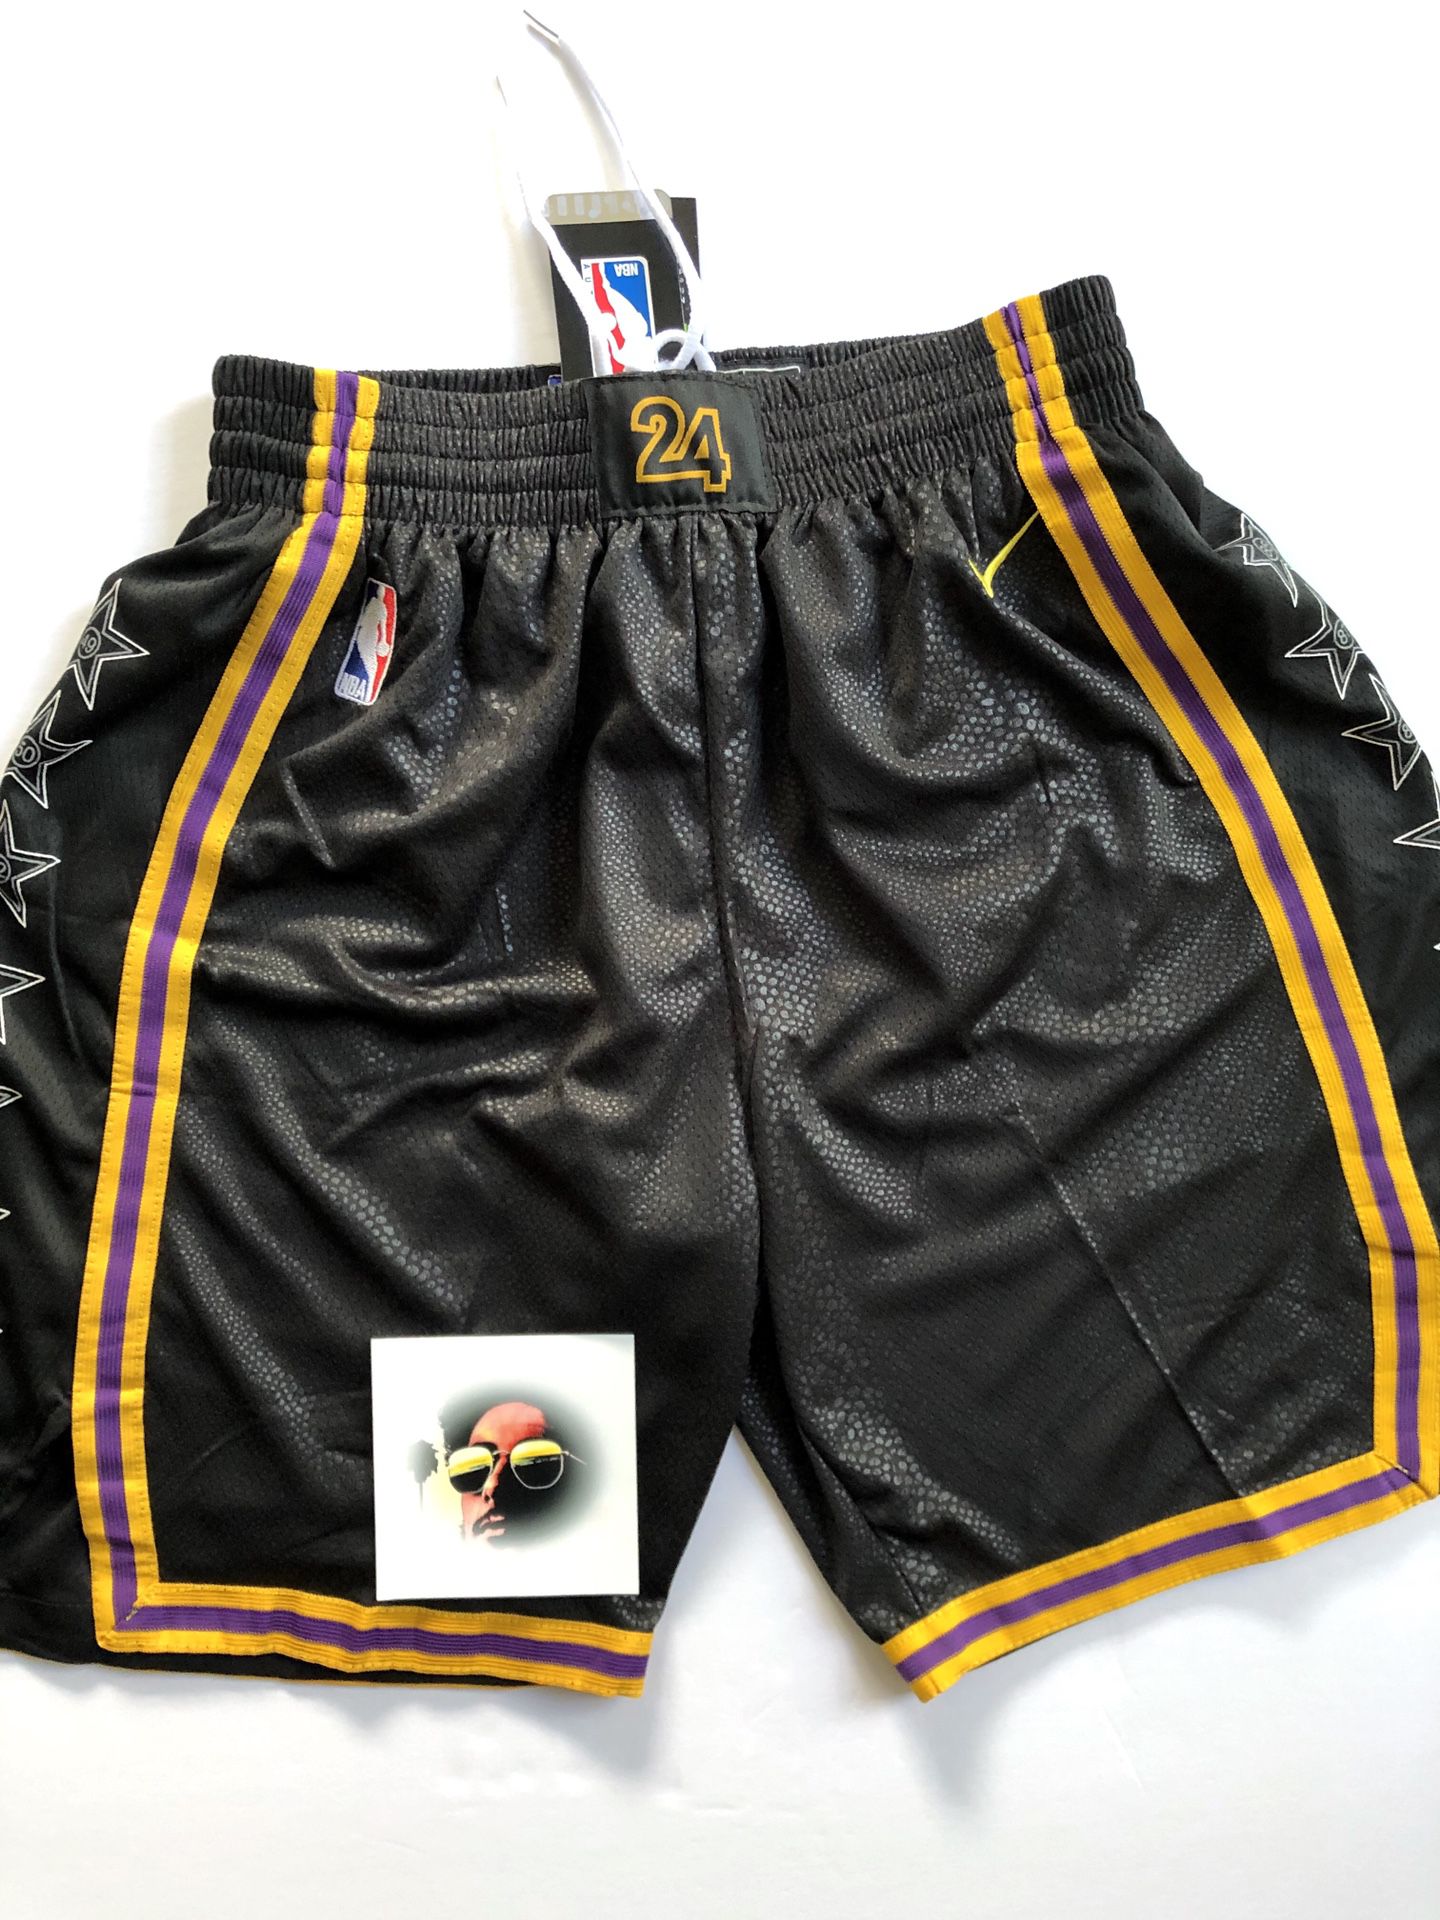 LA Lakers ‘Kobe Black Mamba’ Shorts - Mens L (fits like M)